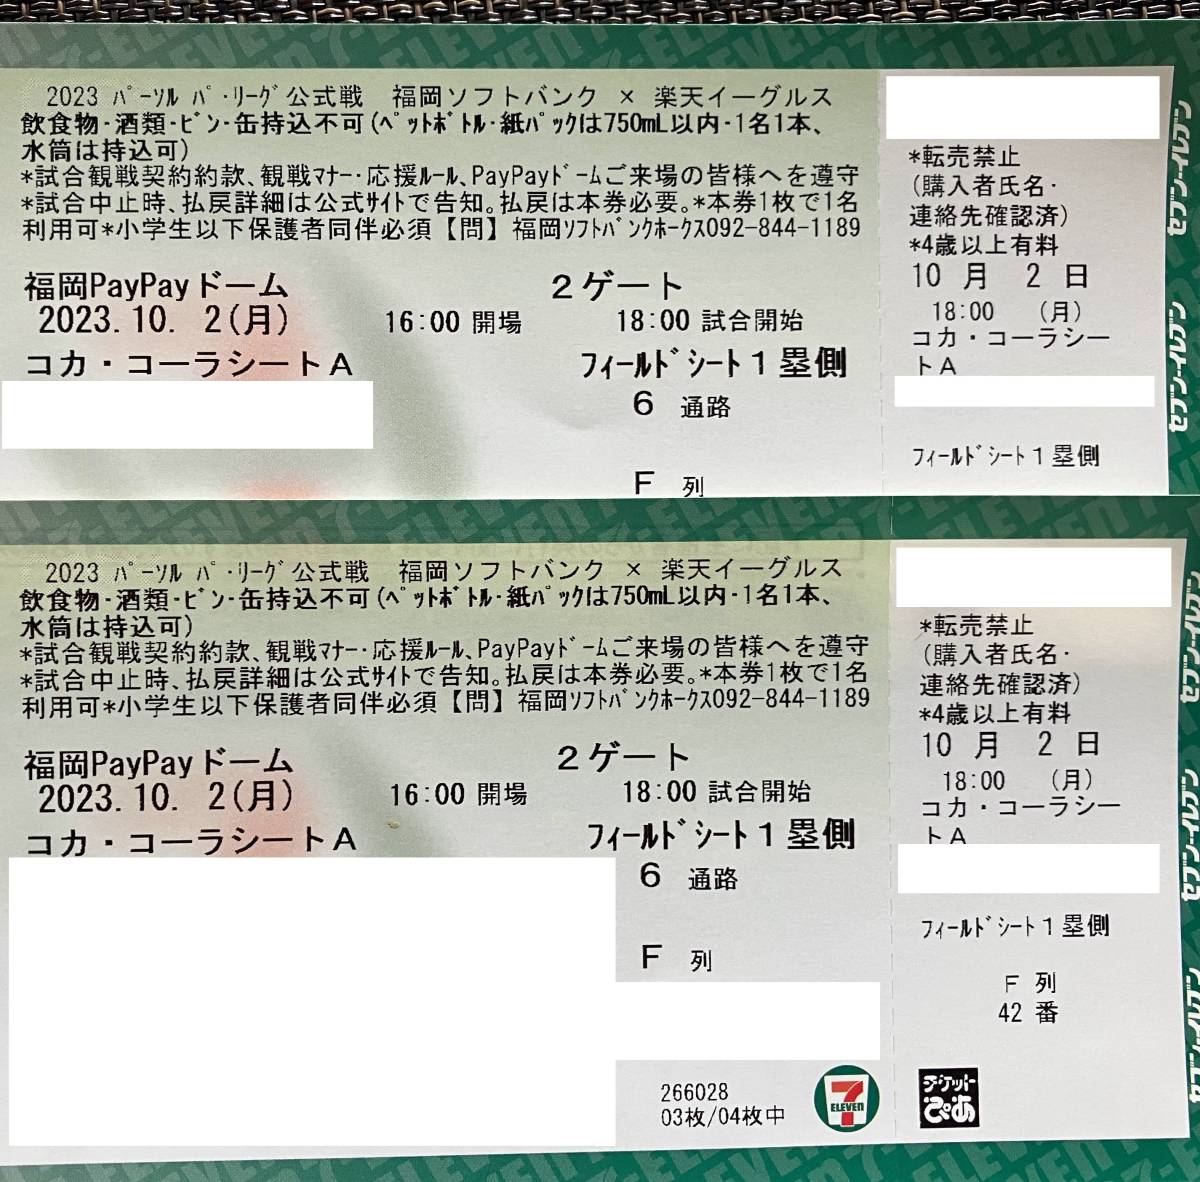 10月2日(月) コカコーラシートA1塁側 ペアチケット 福岡ソフトバンク 